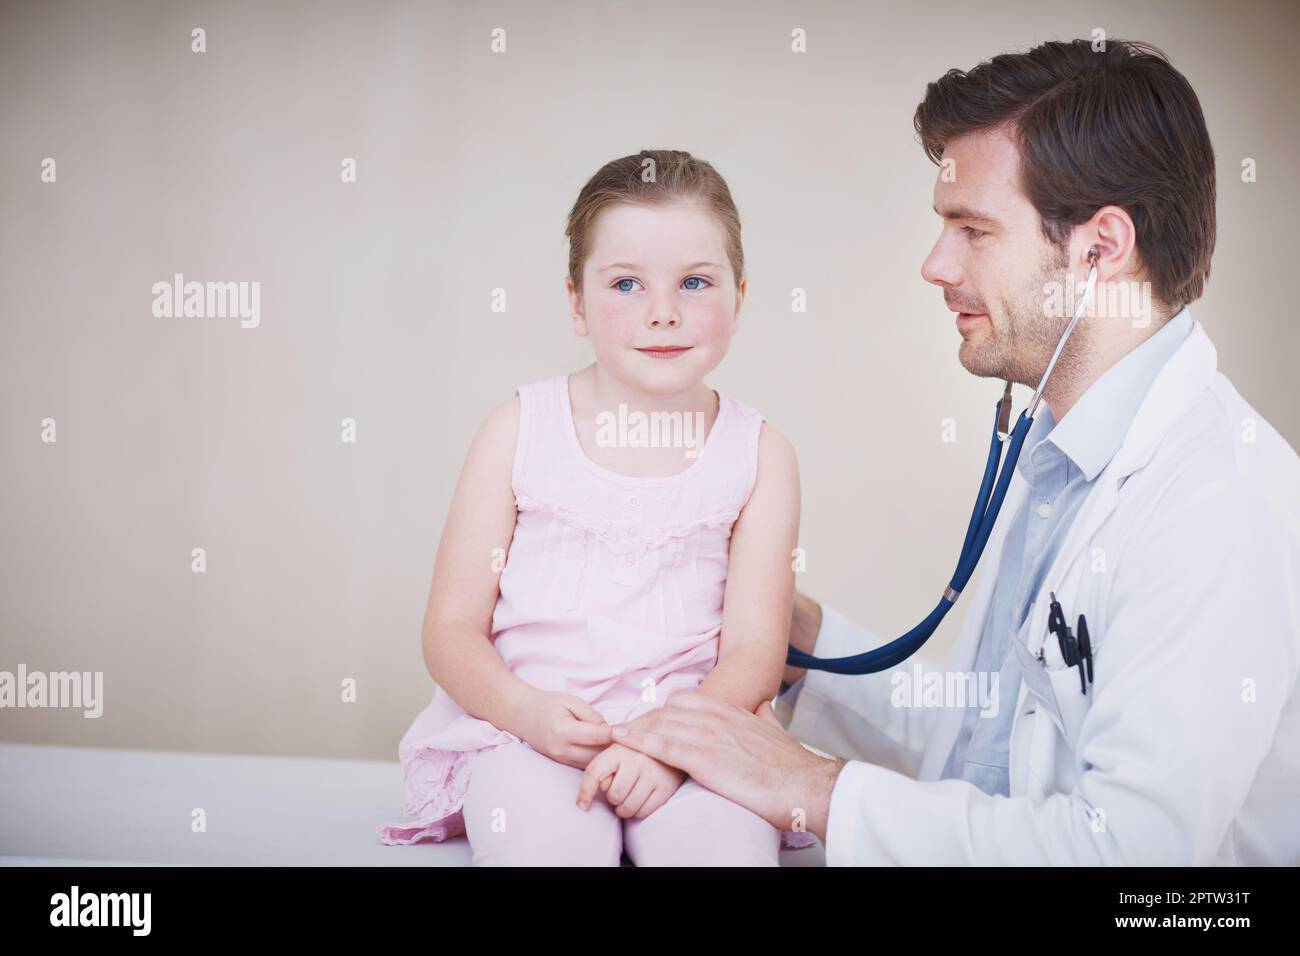 Solo un rapido controllo. Un medico maschio che fa un esame medico generale di una bambina con il suo stetoscopio Foto Stock